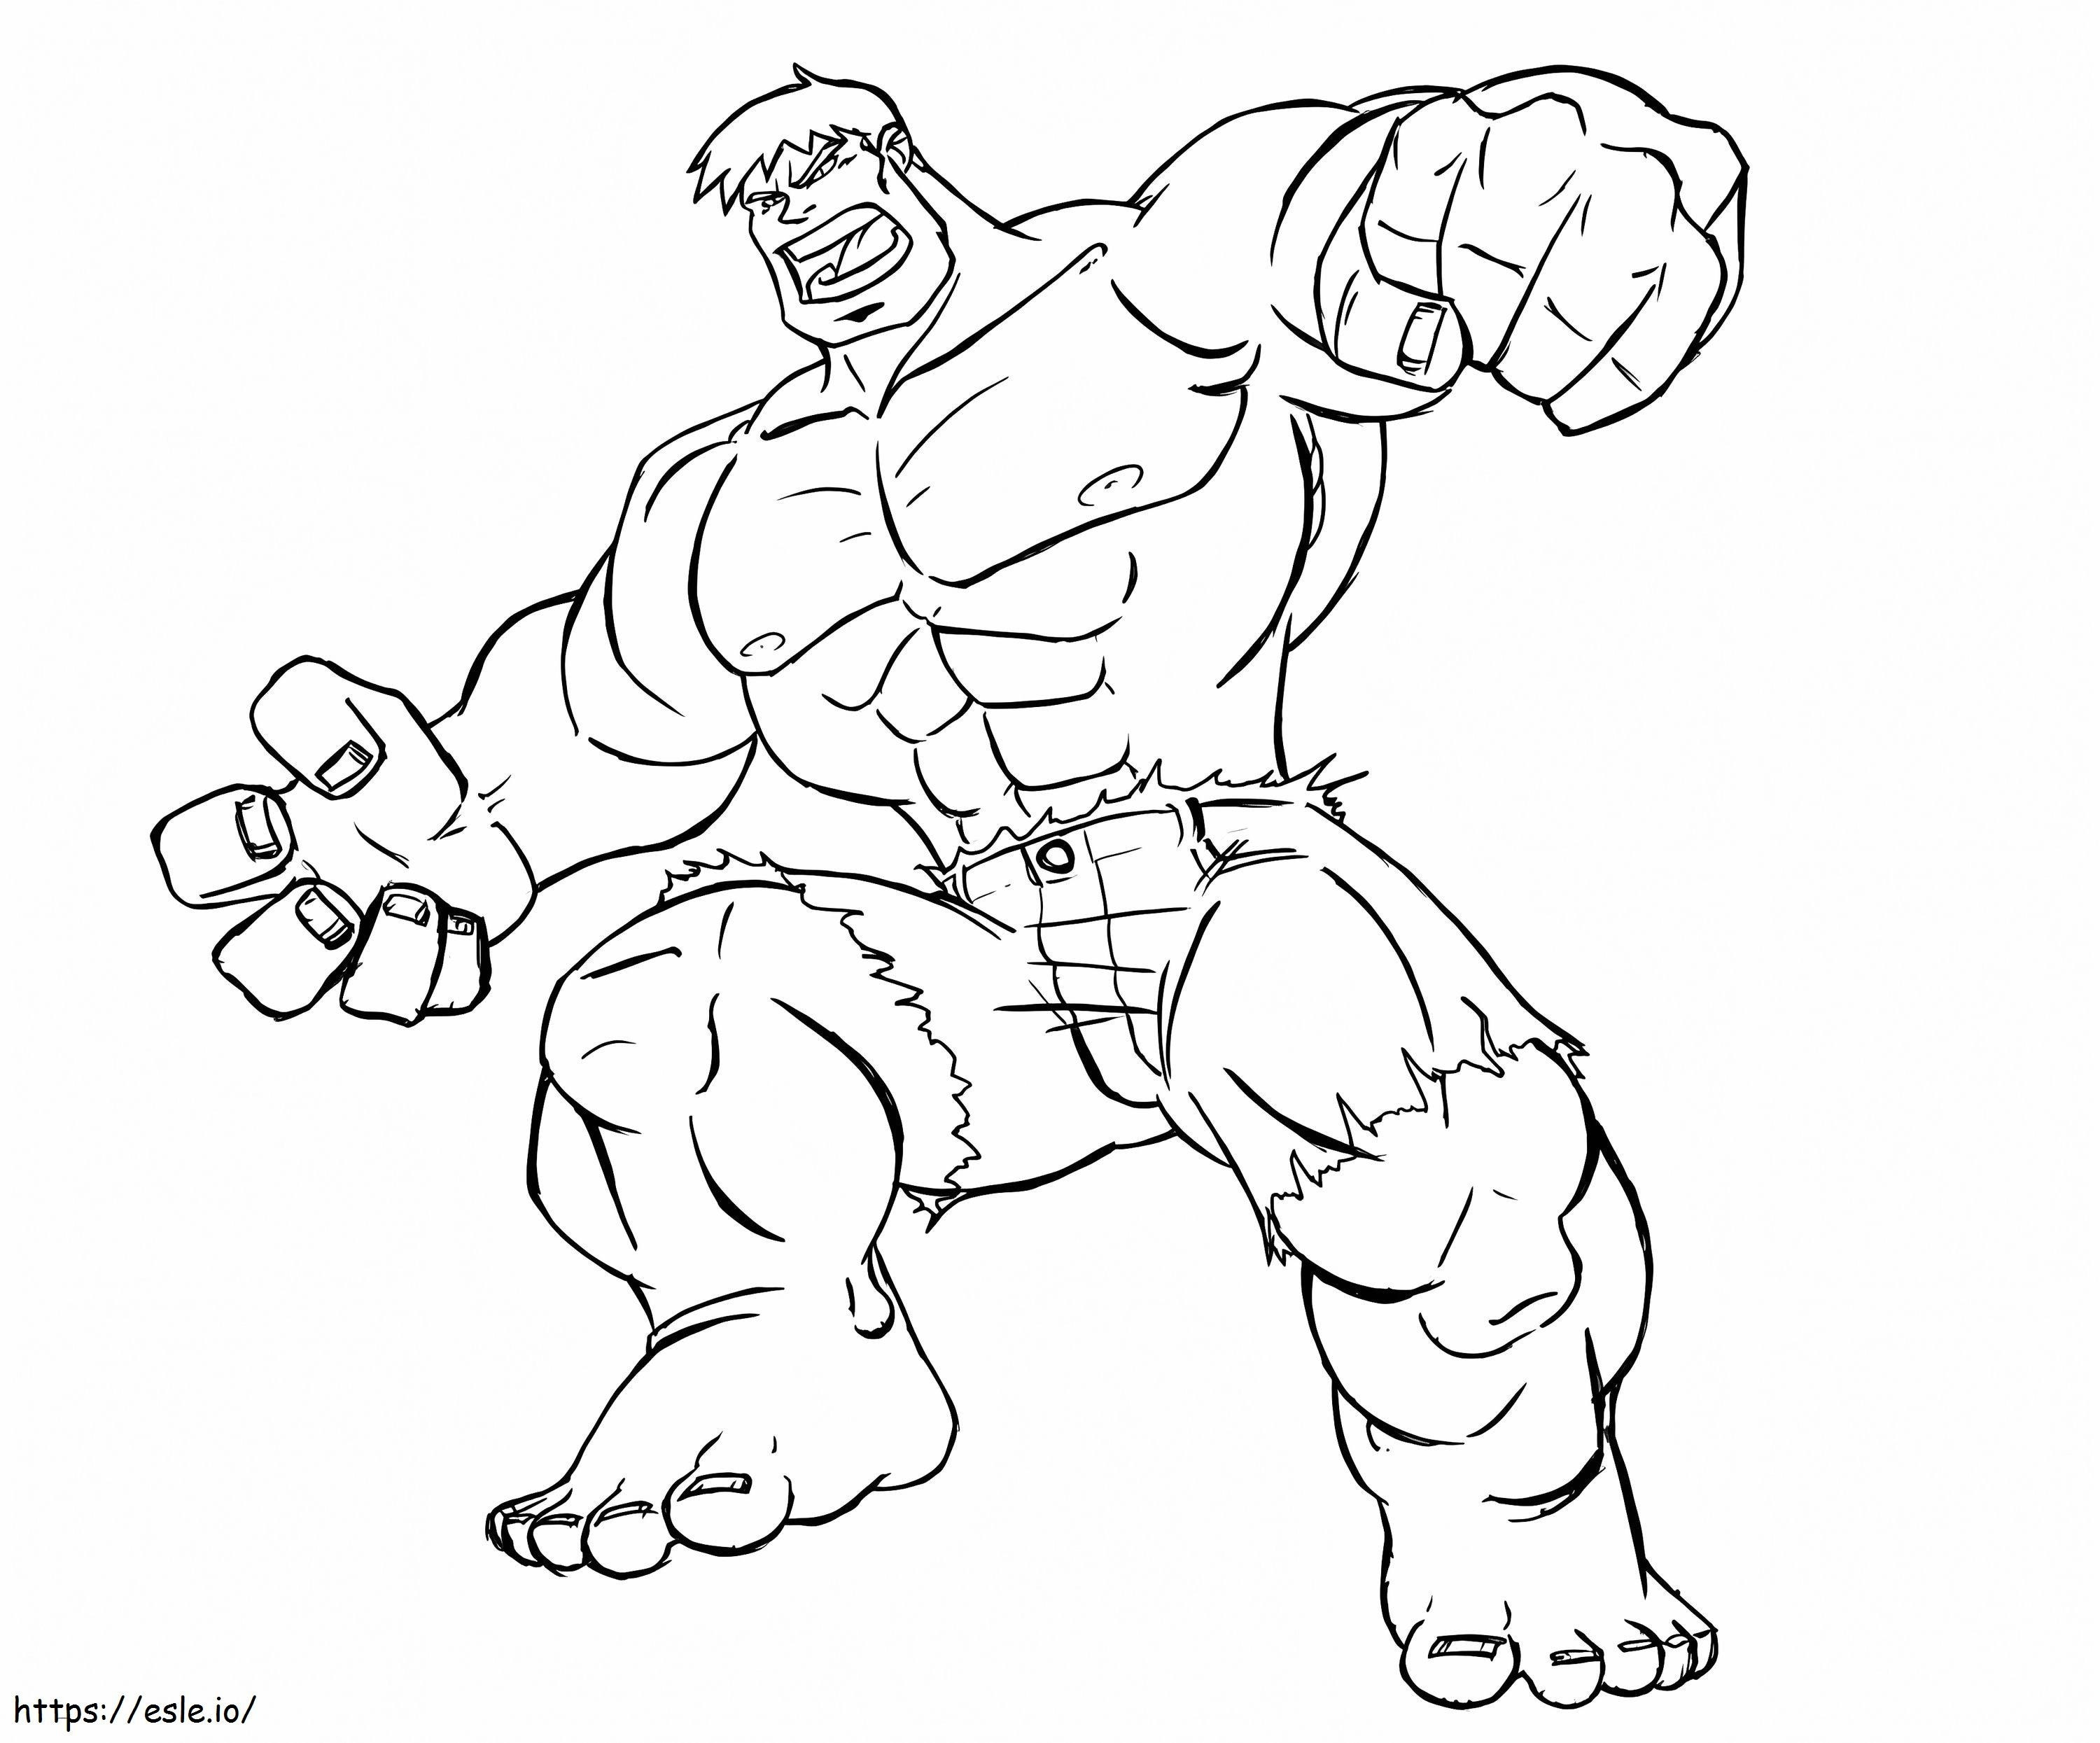 Niesamowity Hulk kolorowanka